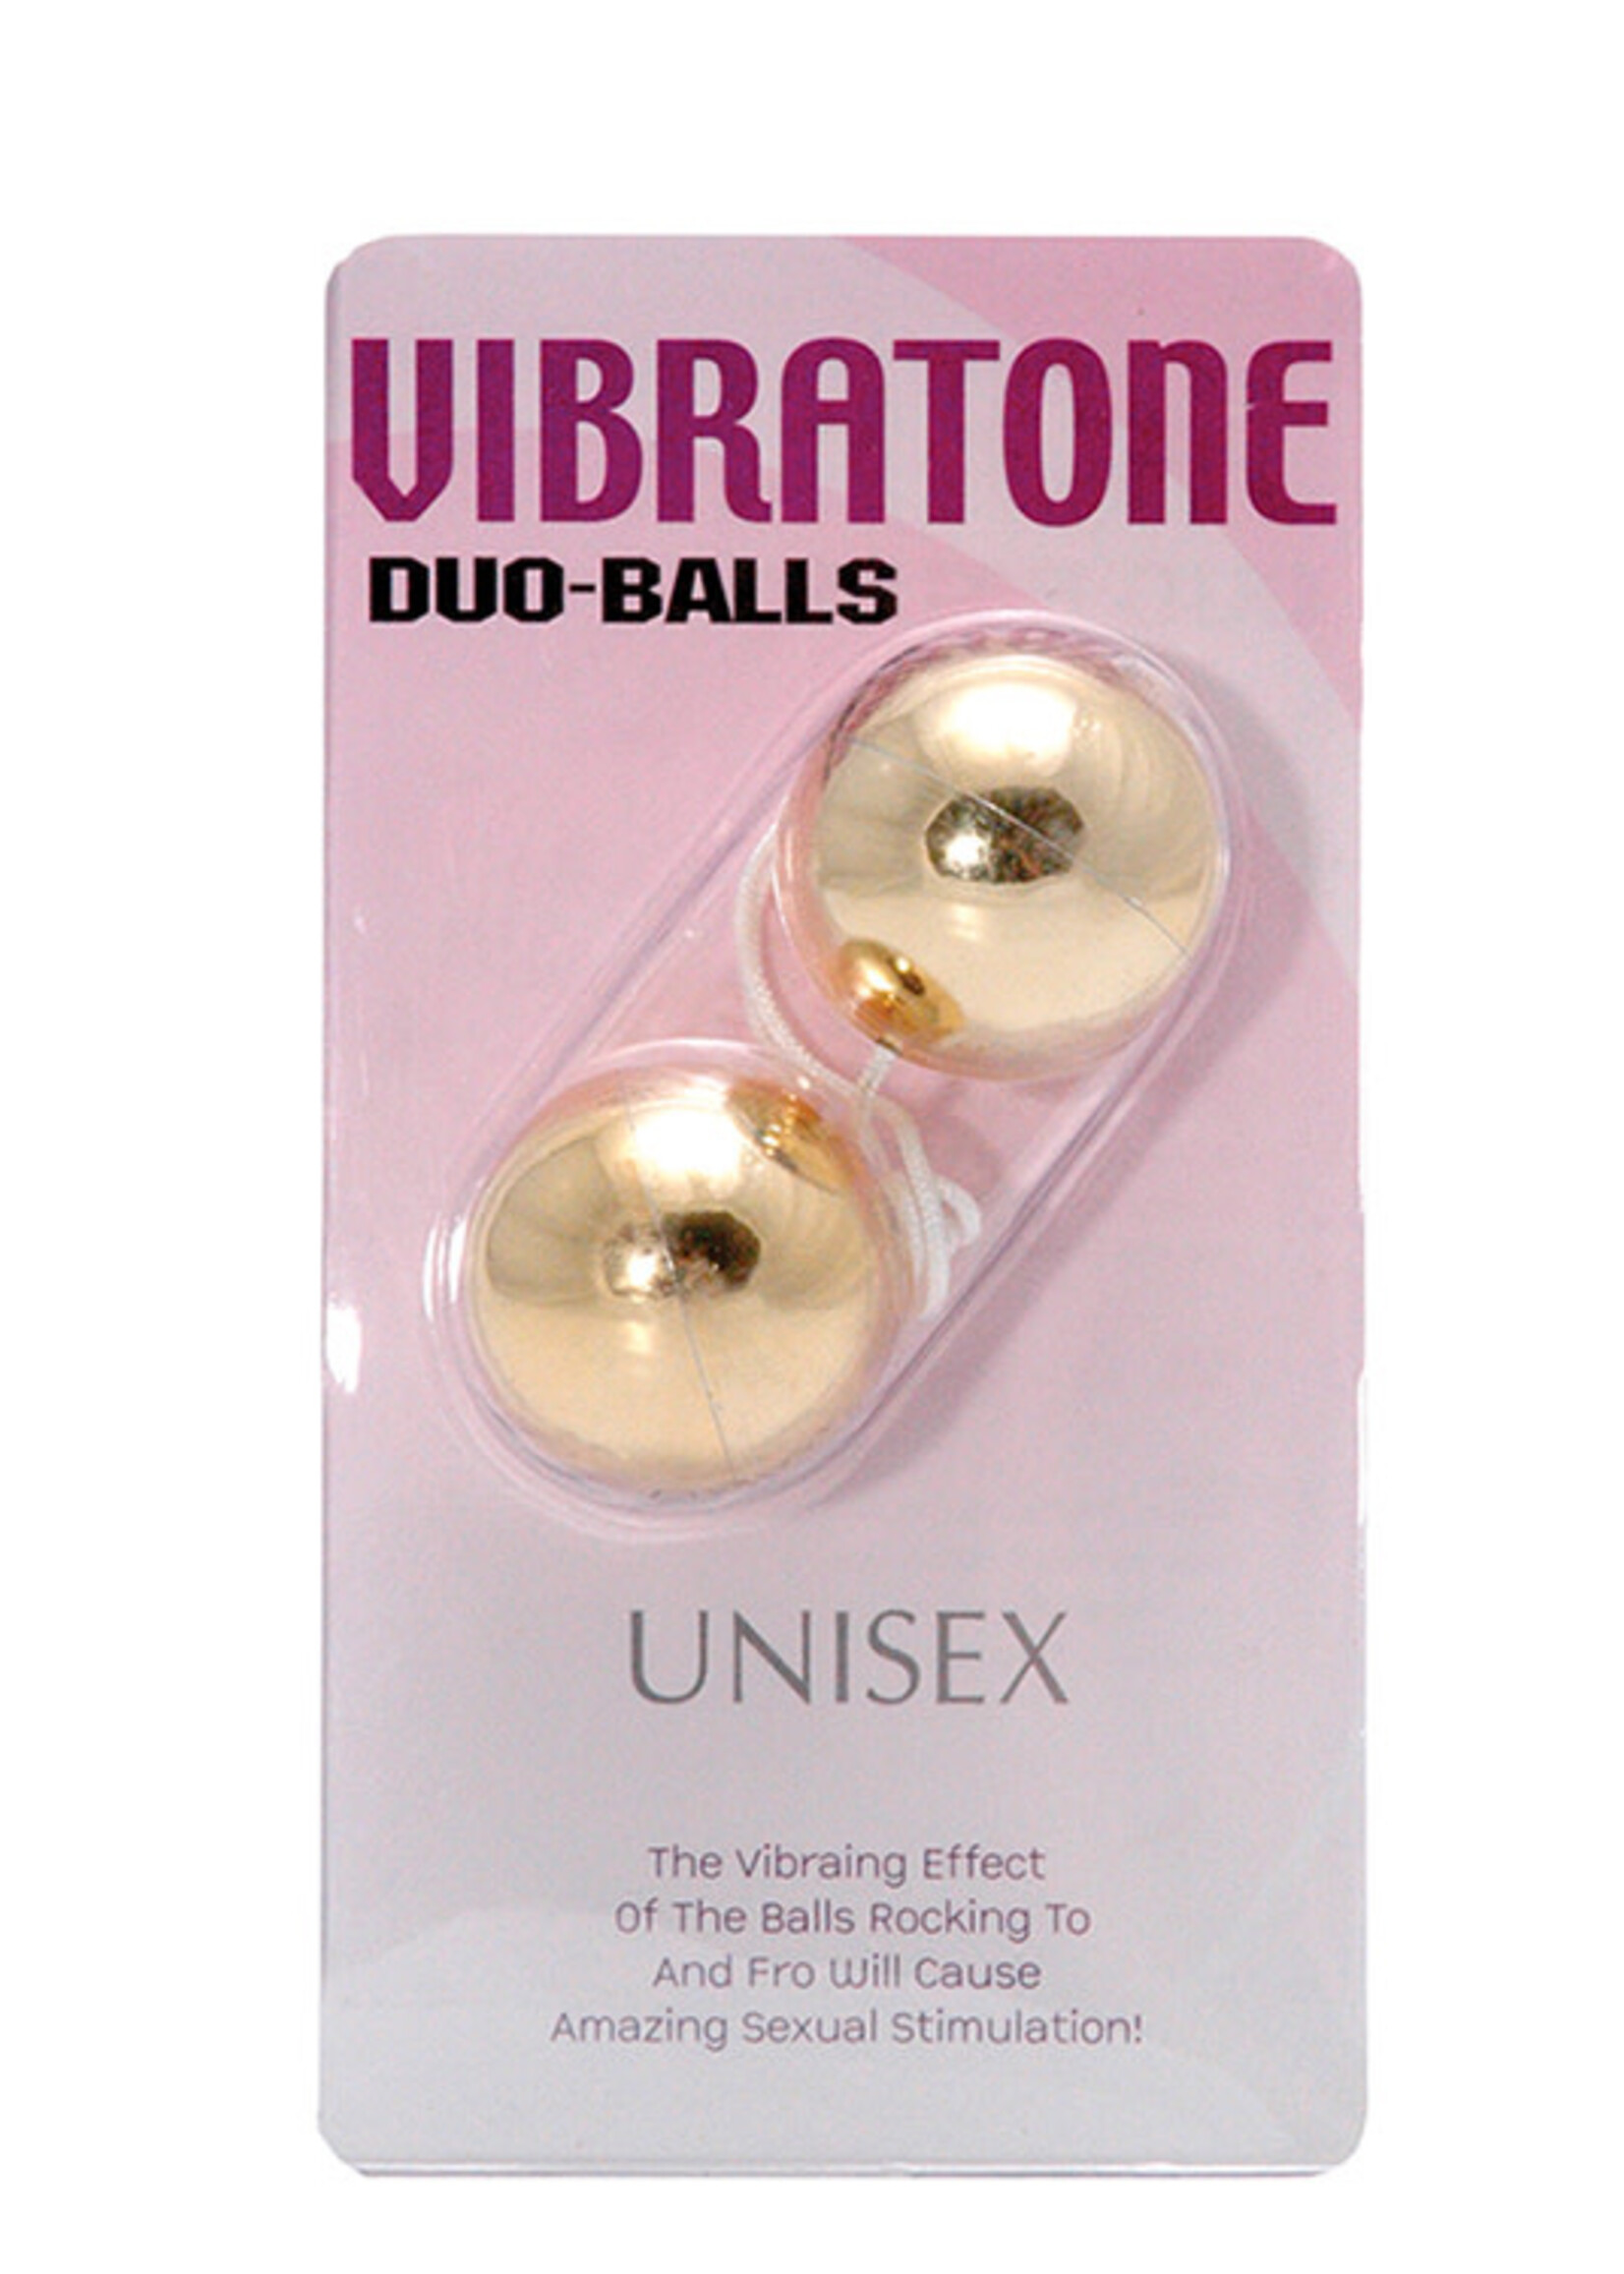 Vibratone duo balls - gold